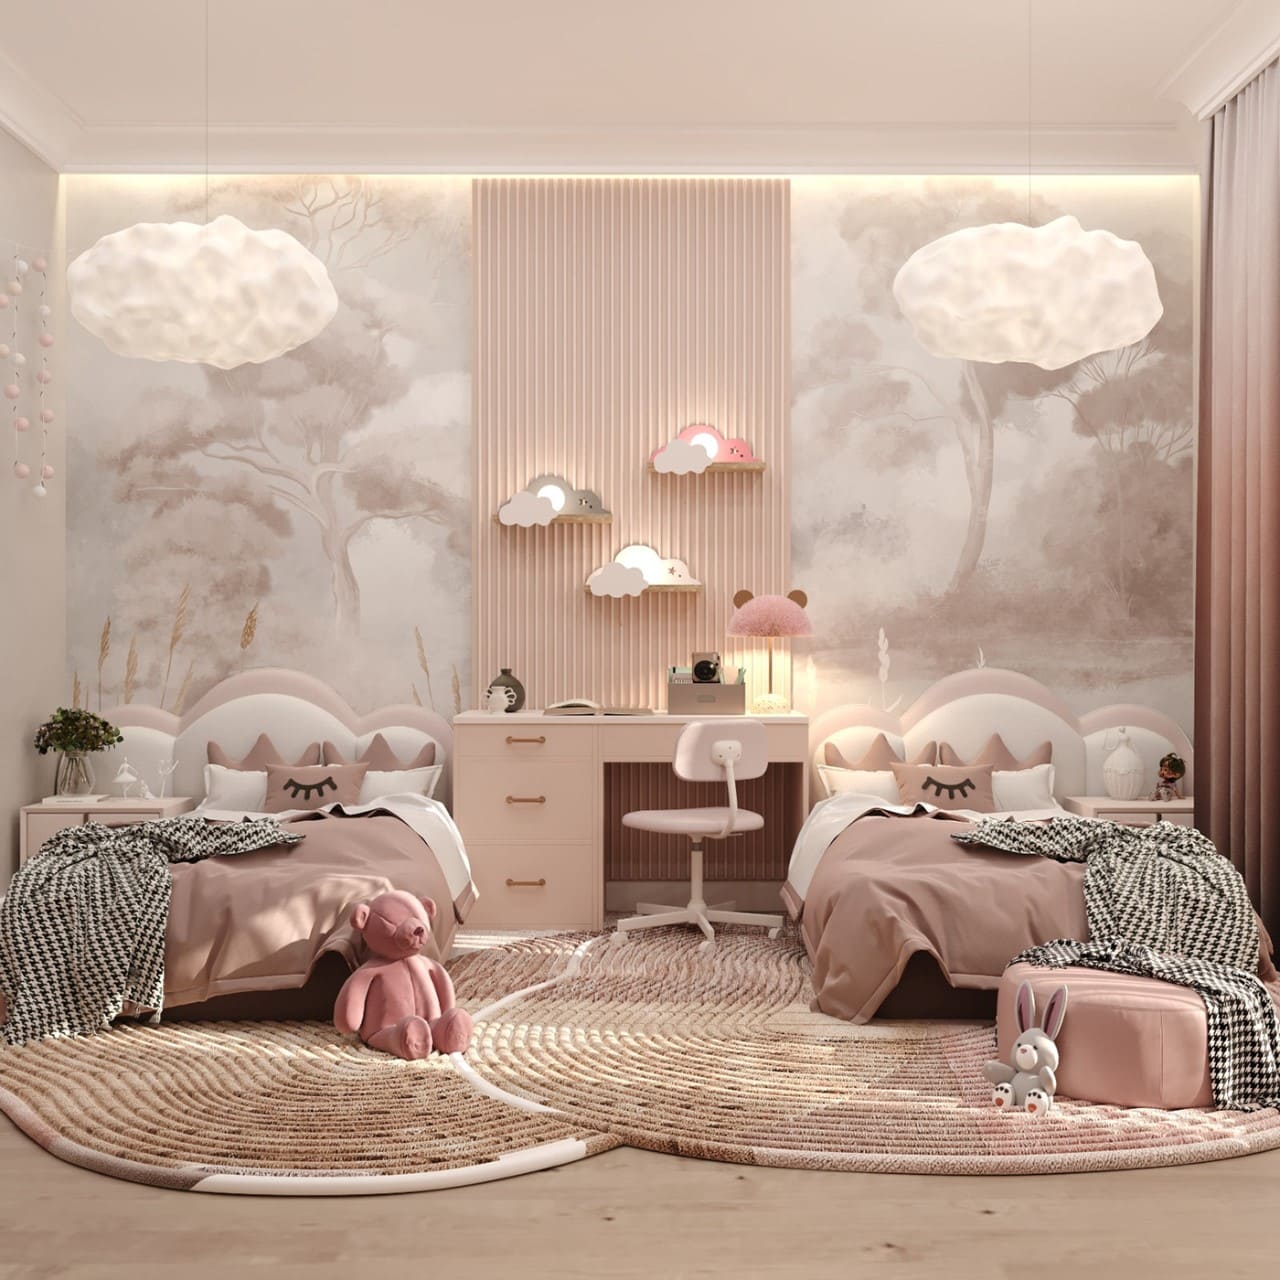 Kết hợp 2 gam màu trắng và xám vào phòng ngủ màu hồng để hài hòa tổng thể không gian